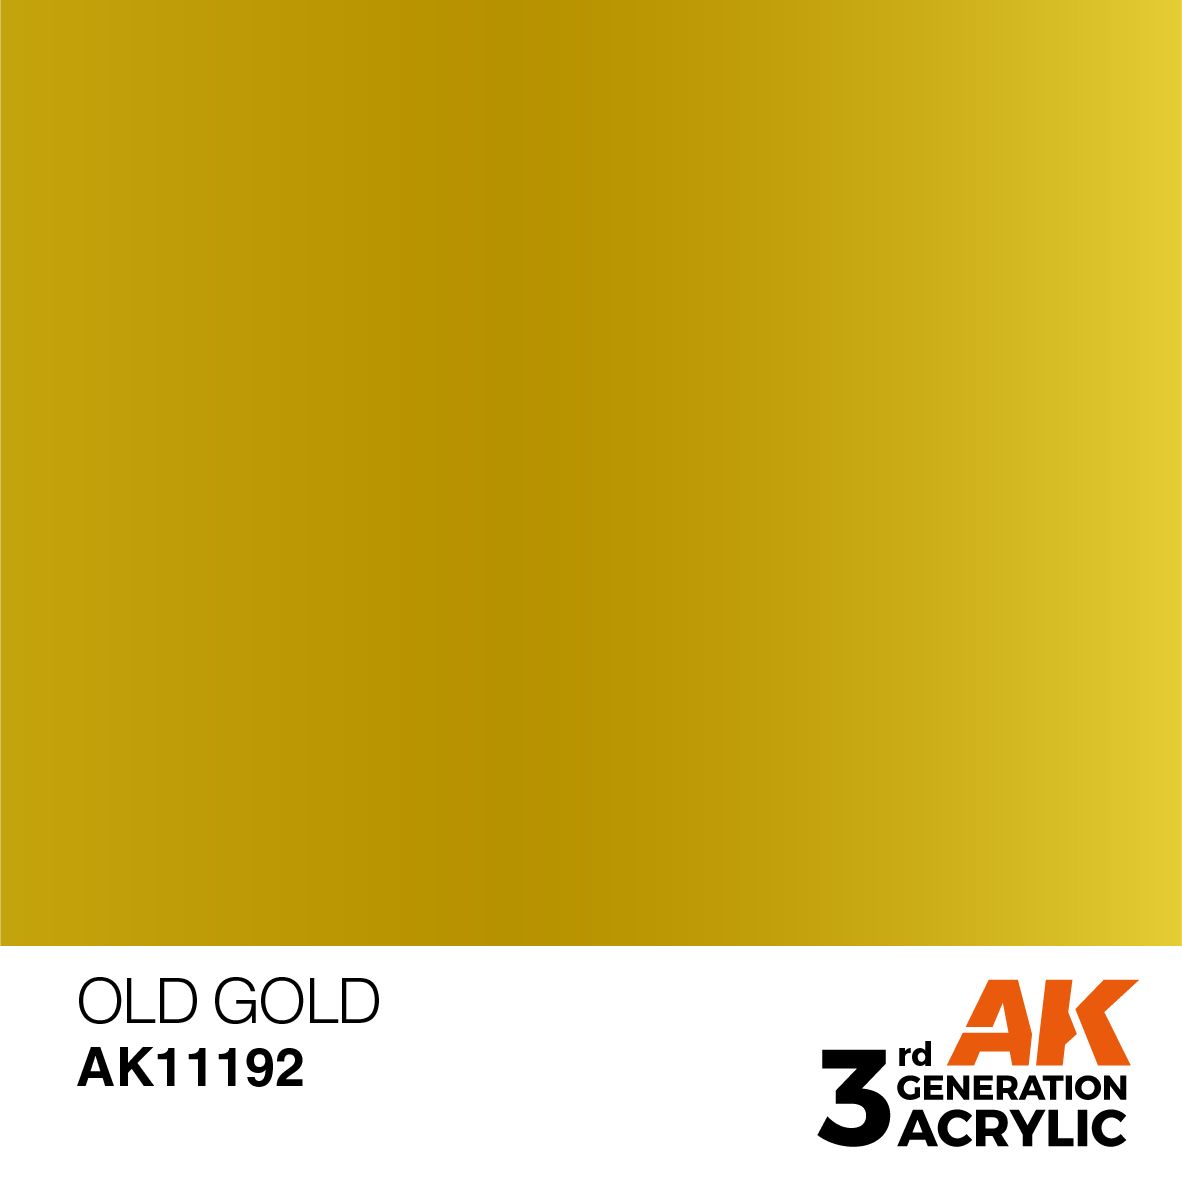 OLD GOLD – METALLIC